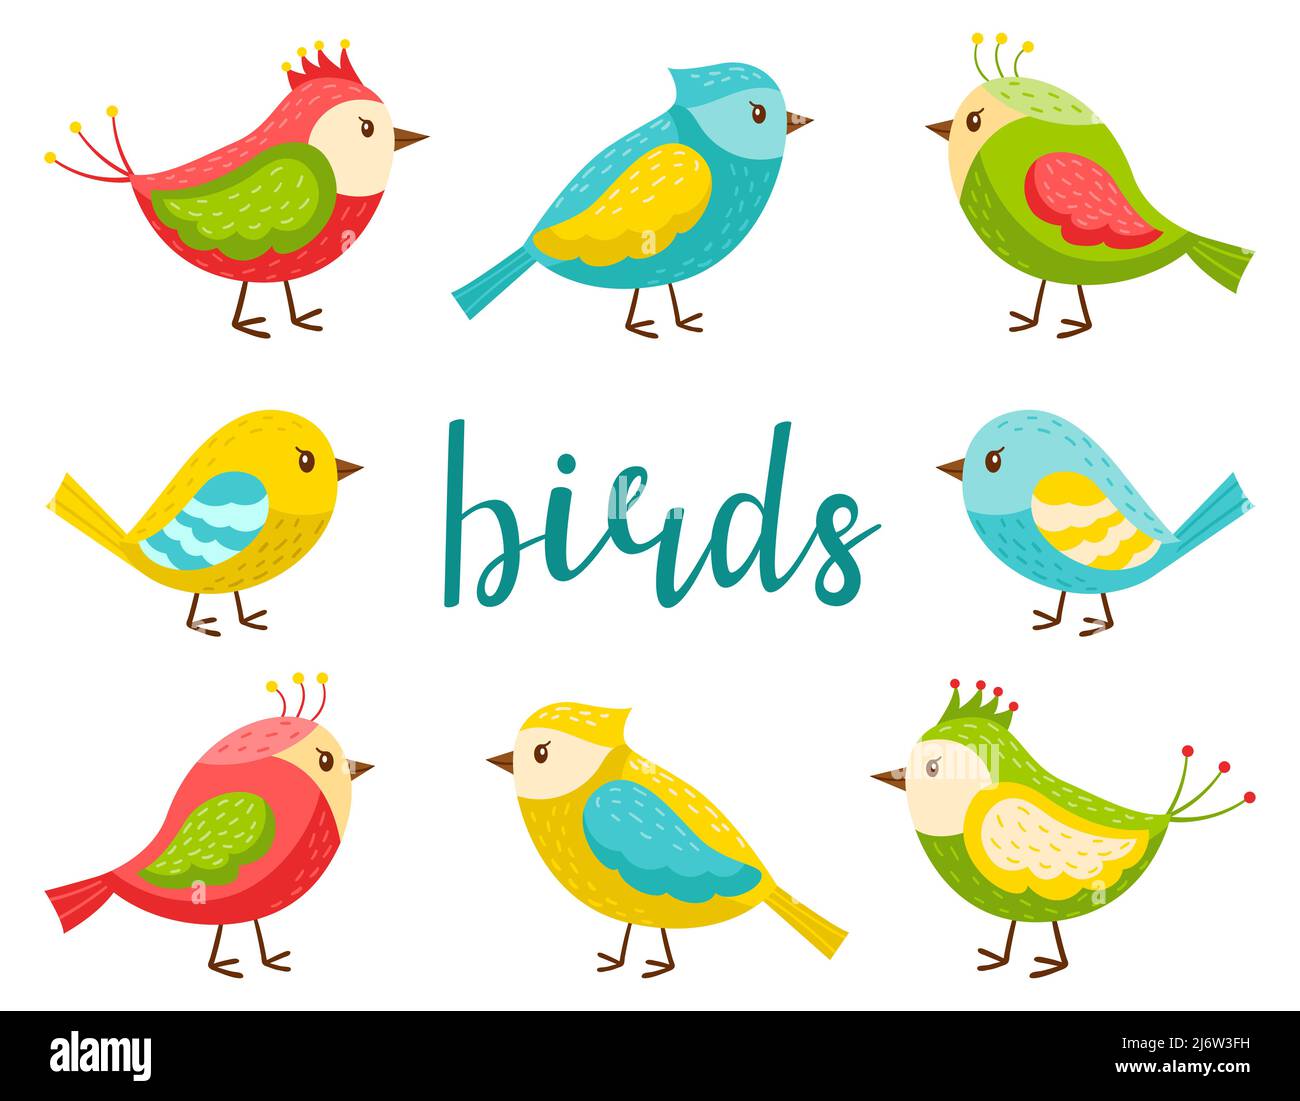 Un insieme di uccelli carini e luminosi. Una collezione di uccelli primaverili cartoni animati in stile piatto. Elementi di design per temi primavera, estate e bambini. Olor vecto Illustrazione Vettoriale